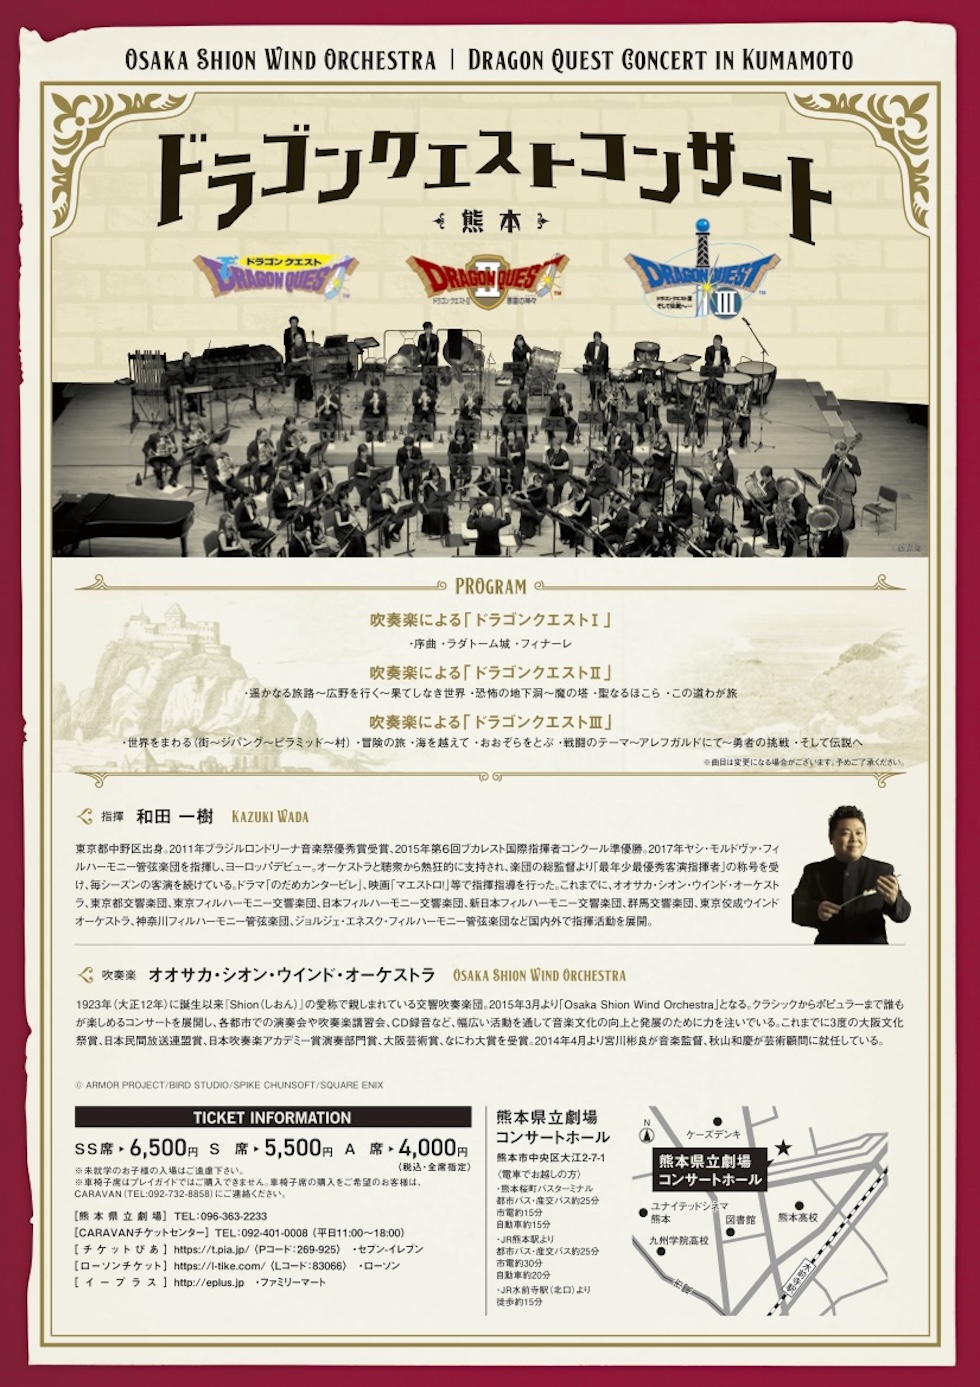 Osaka Shion Wind Orchestra ドラゴンクエストコンサート in 熊本　吹奏楽組曲「ドラゴンクエスト」Ⅰ・Ⅱ・Ⅲ　より